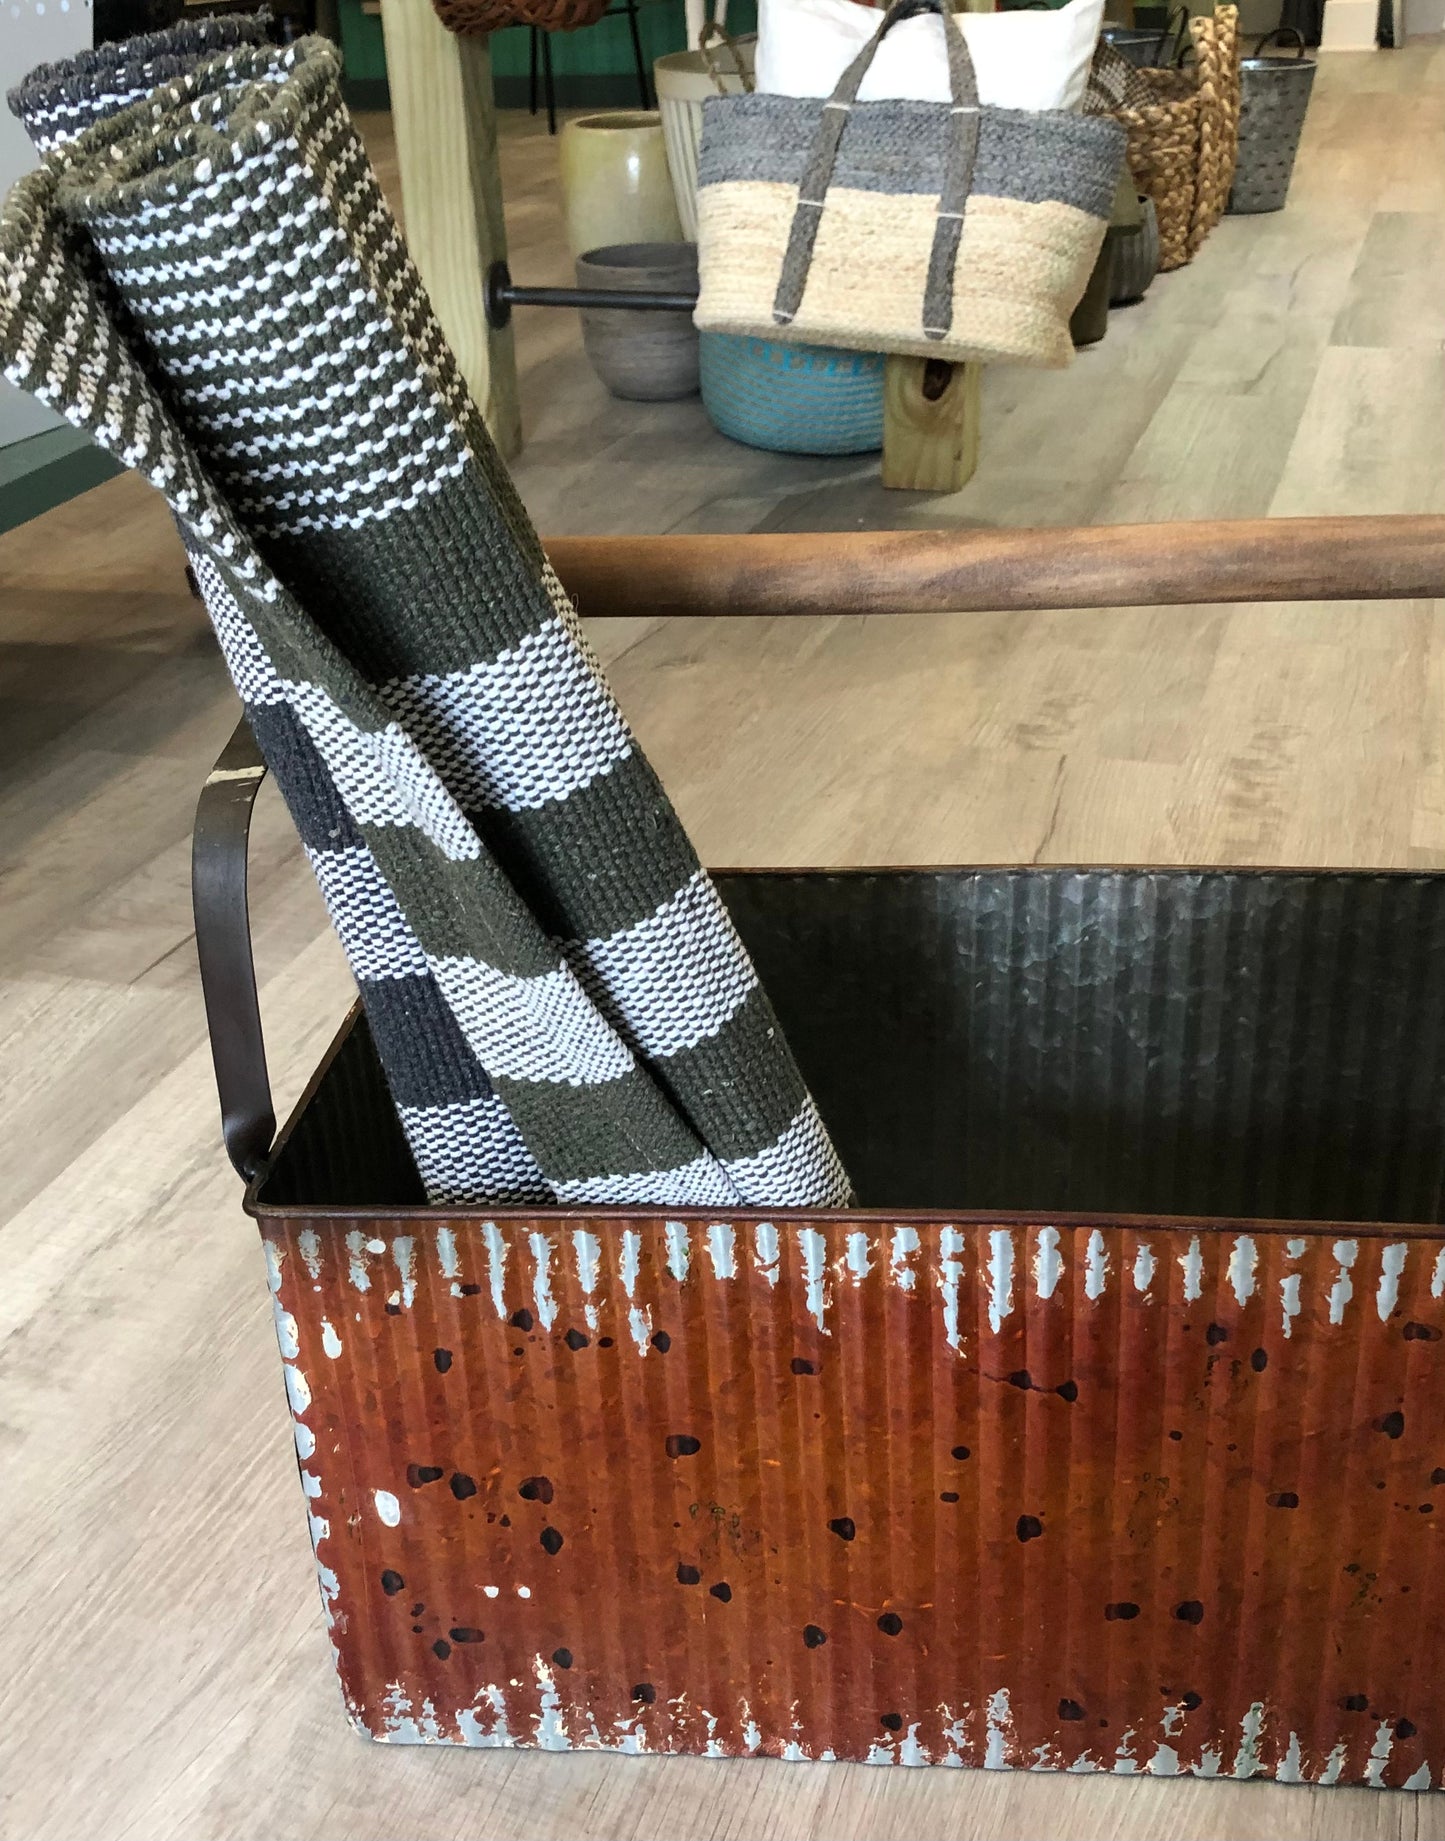 Metal Kindling basket/log carrier